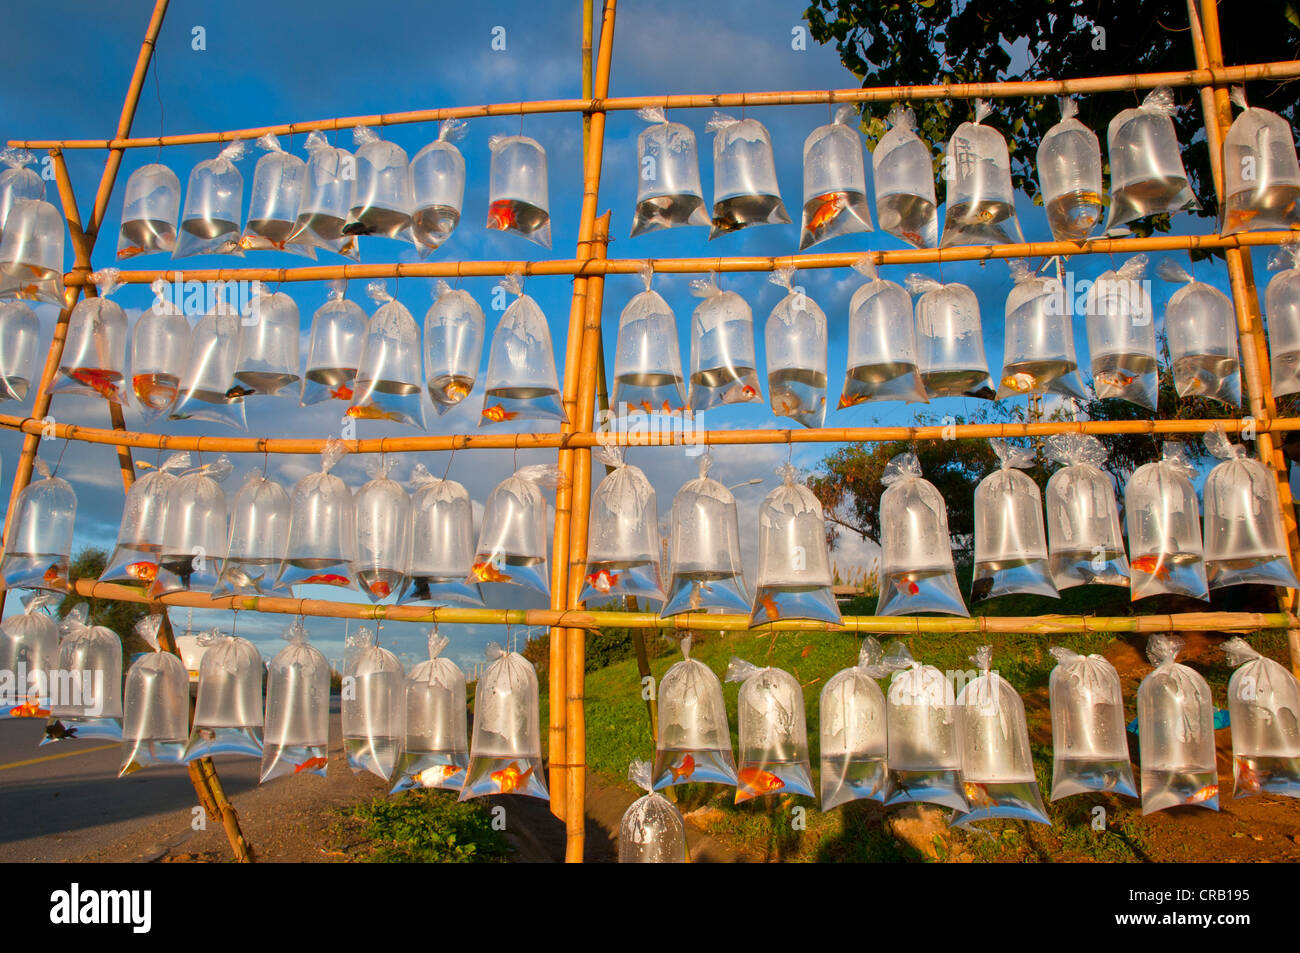 Zierfische für Verkauf in Plastiktüten, Cherchell, Algerien, Afrika Stockfoto